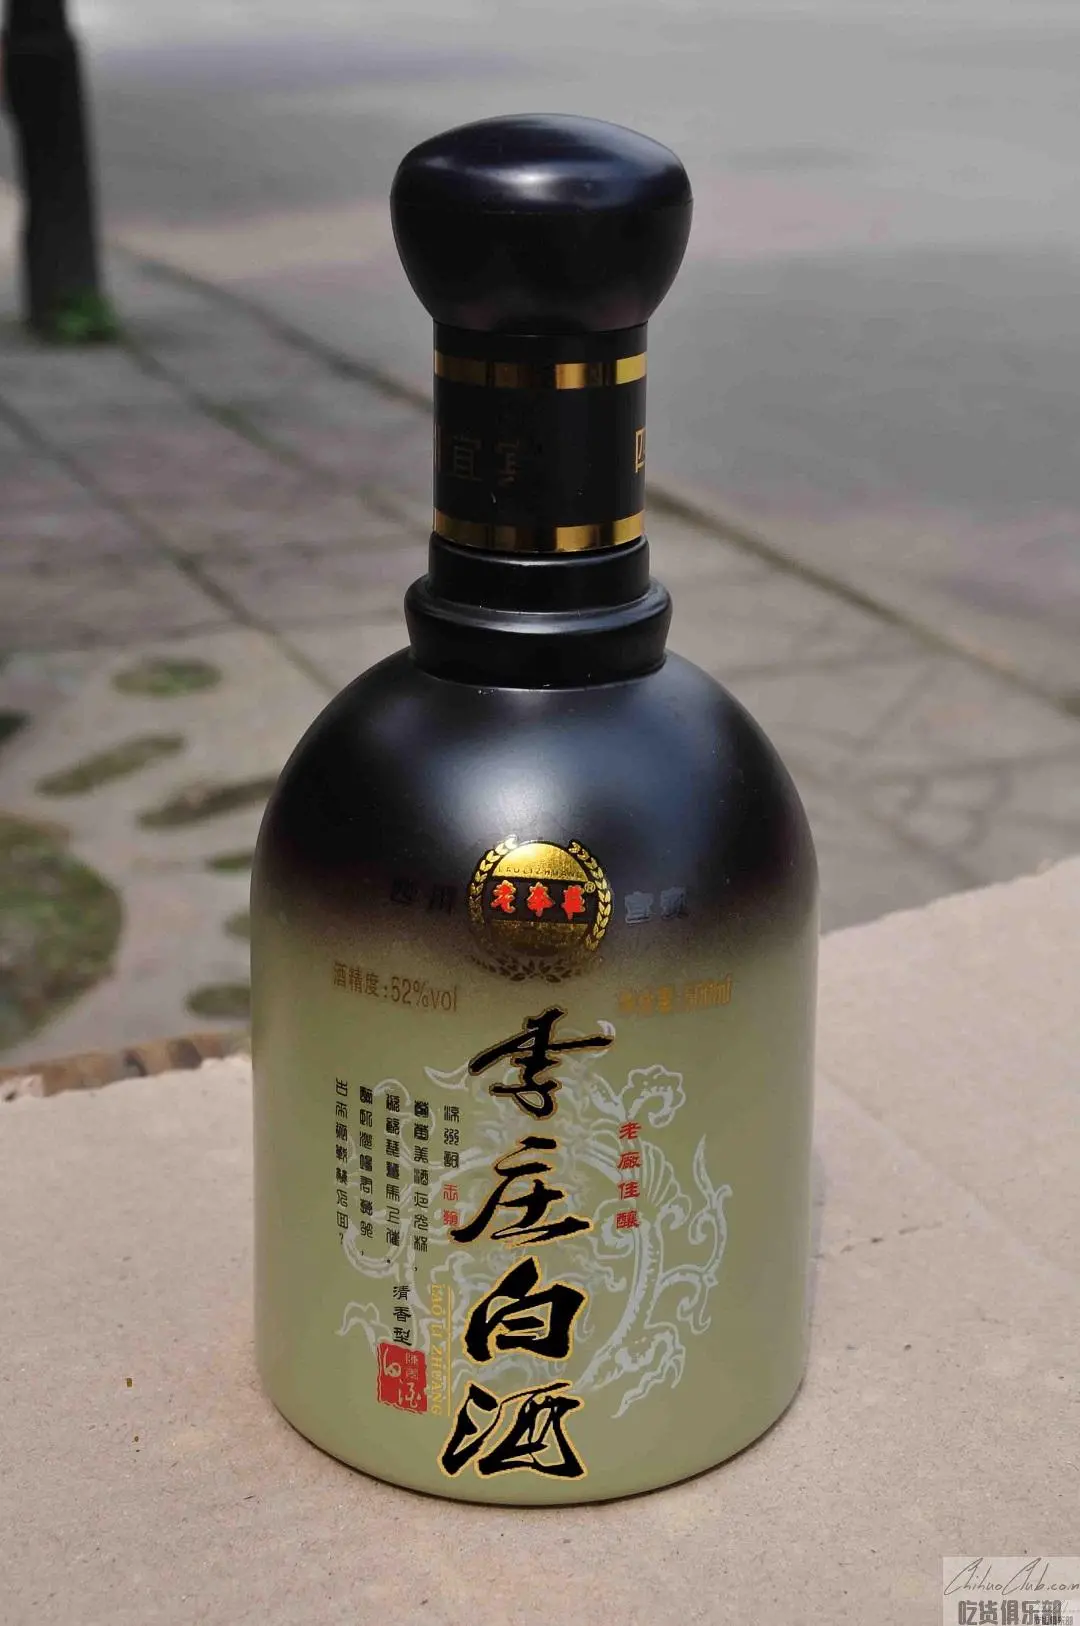 Li Zhuang Liquor